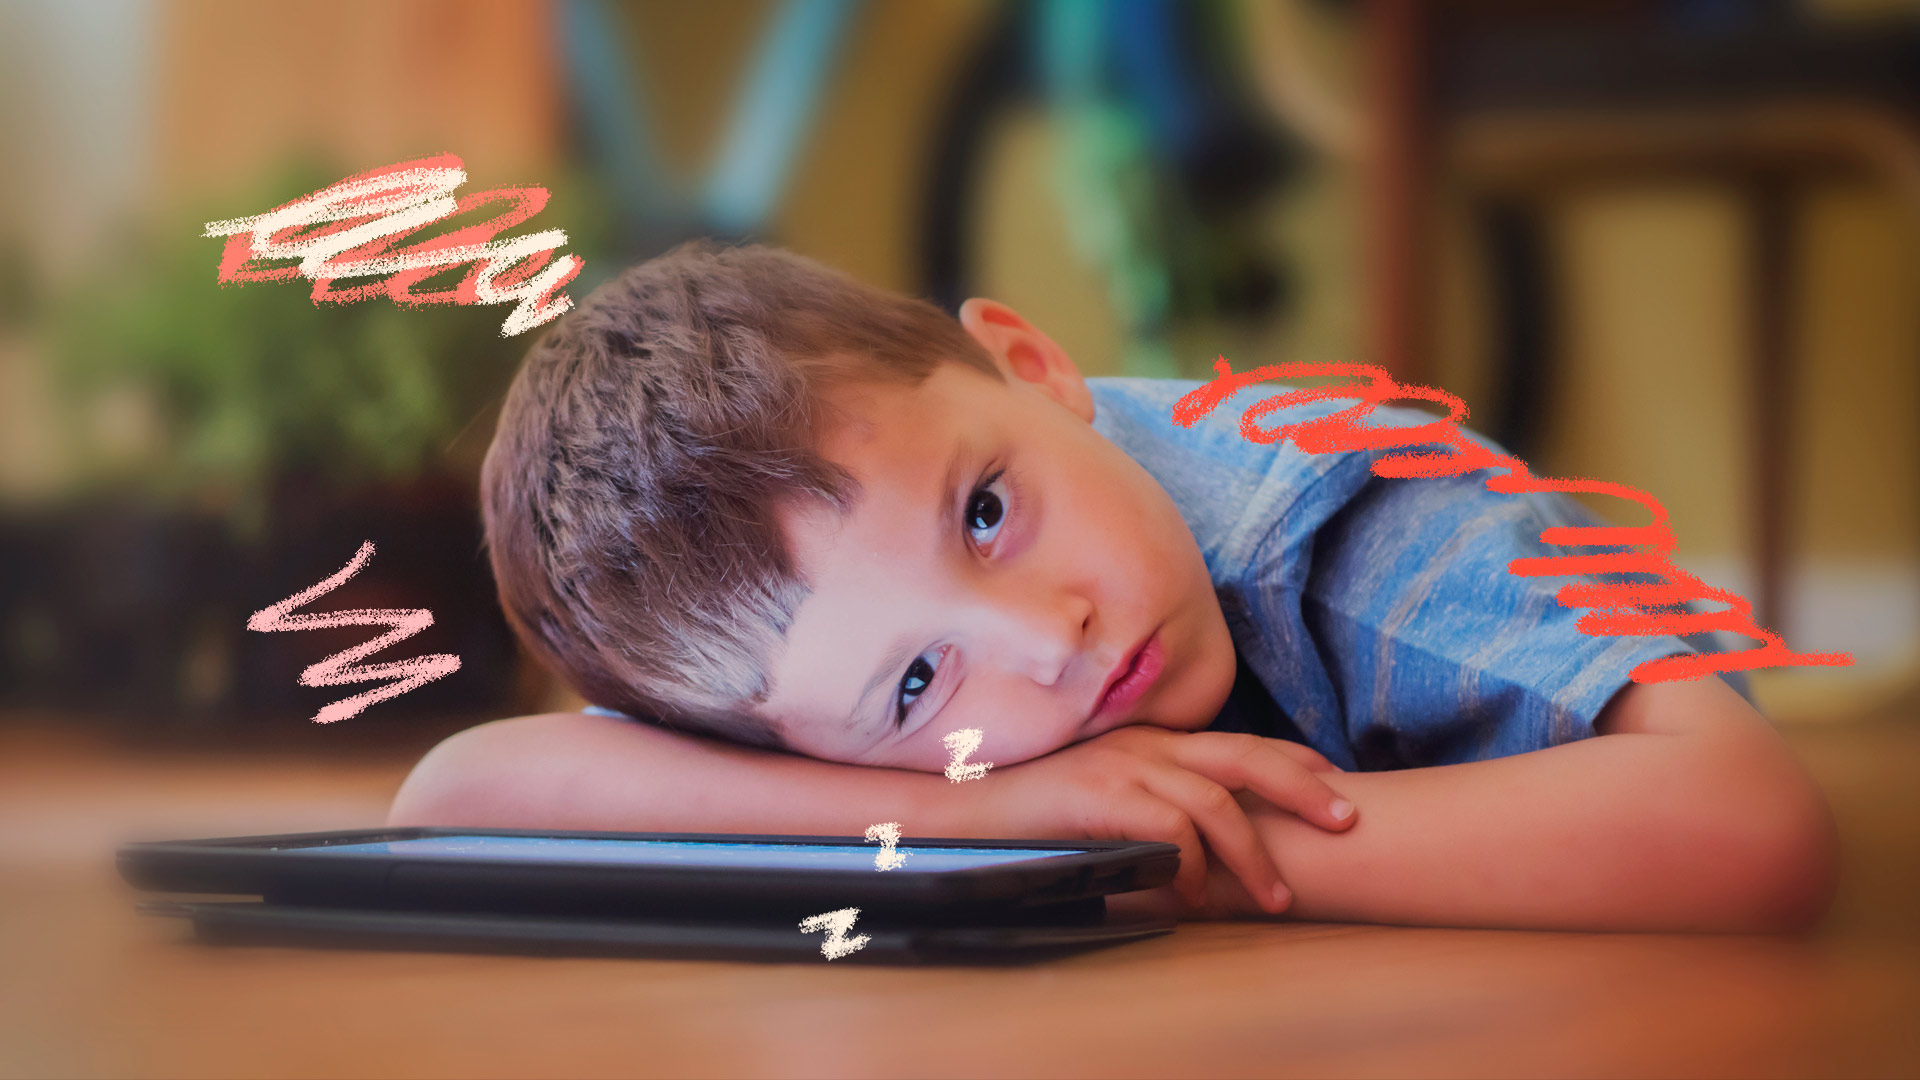 Imagem de um menino de cabelo castanho aparece debruçado sobre um tablet e aparenta estar um pouco cansado. Texto sobre a influência das telas no desenvolvimento da criança